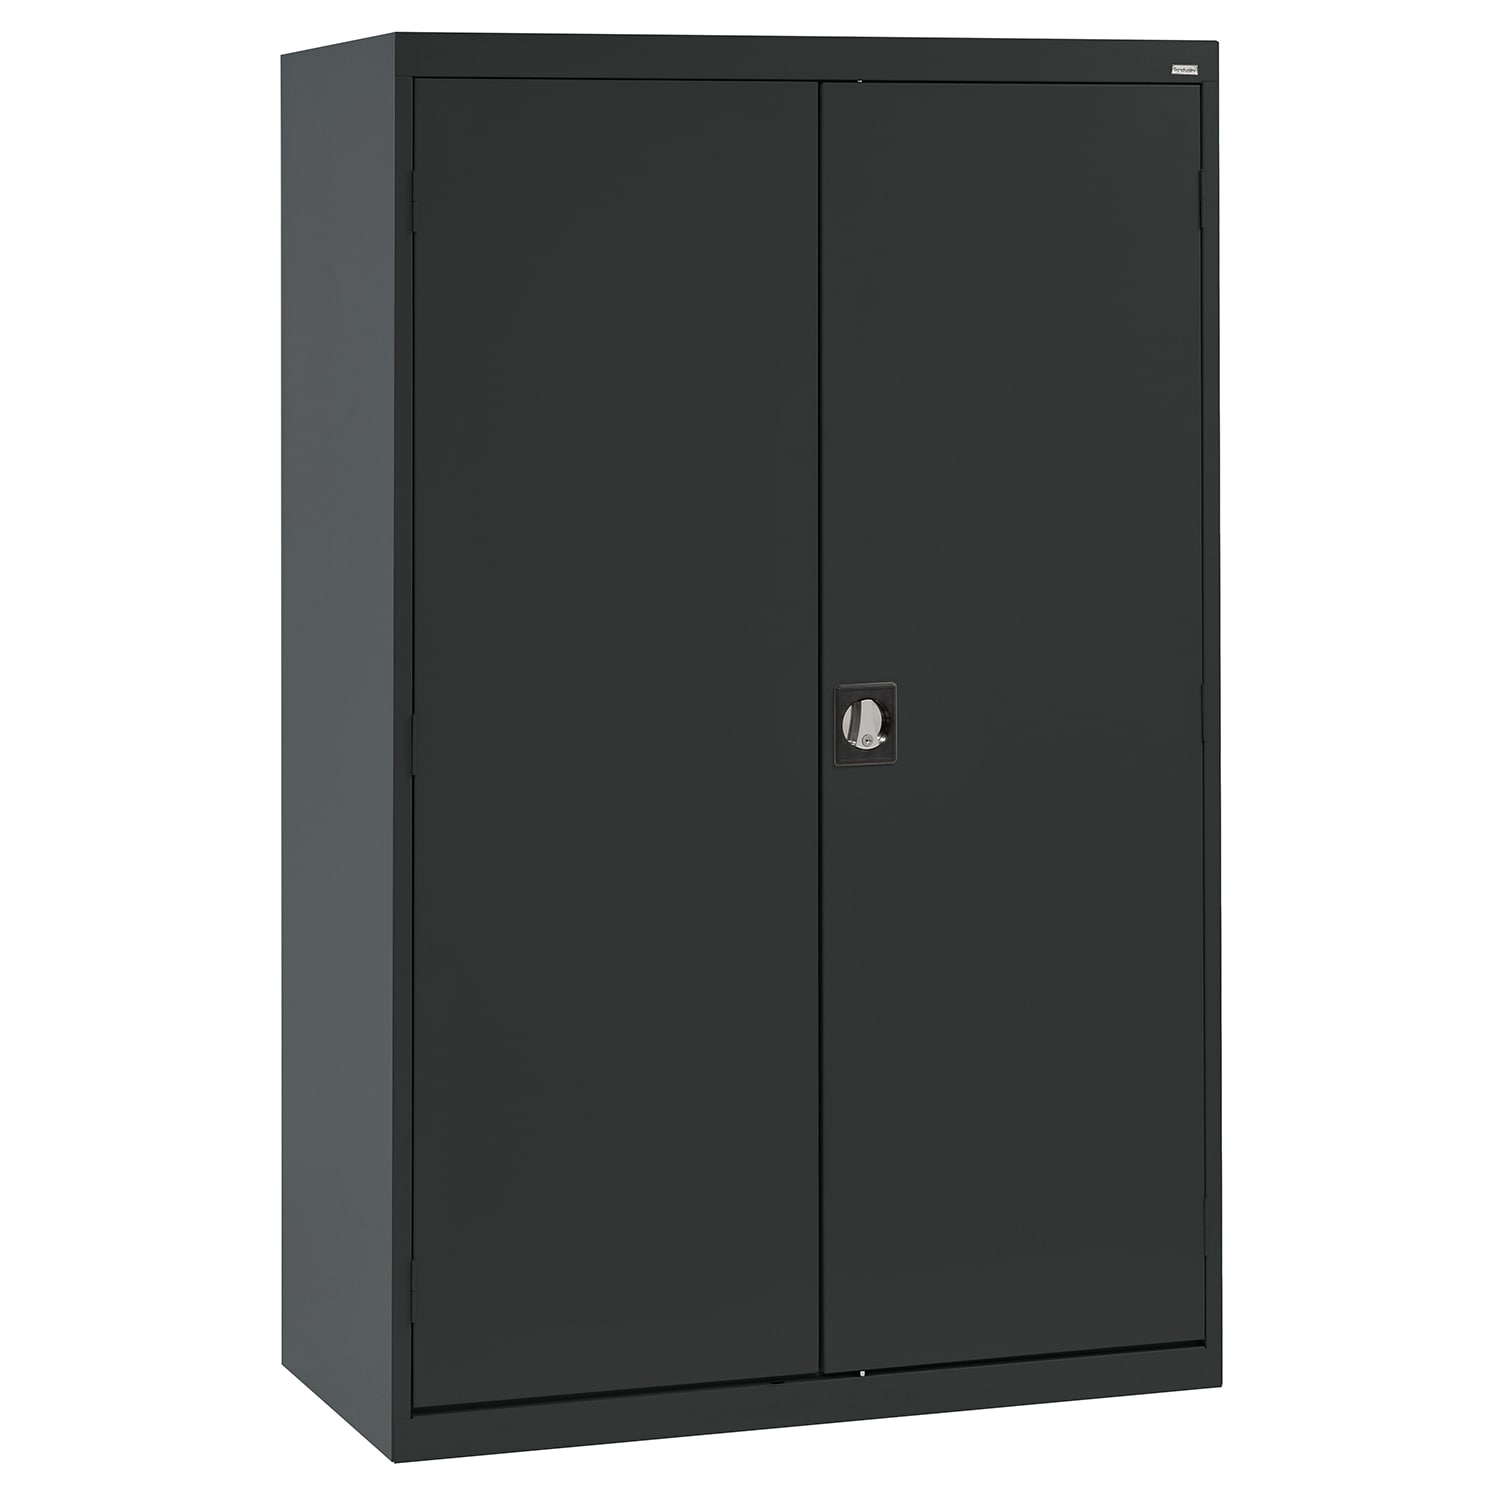 Steel Freestanding Garage Cabinet in Black (46-in W x 72-in H x 24-in D) | - Sandusky EACR462472-09